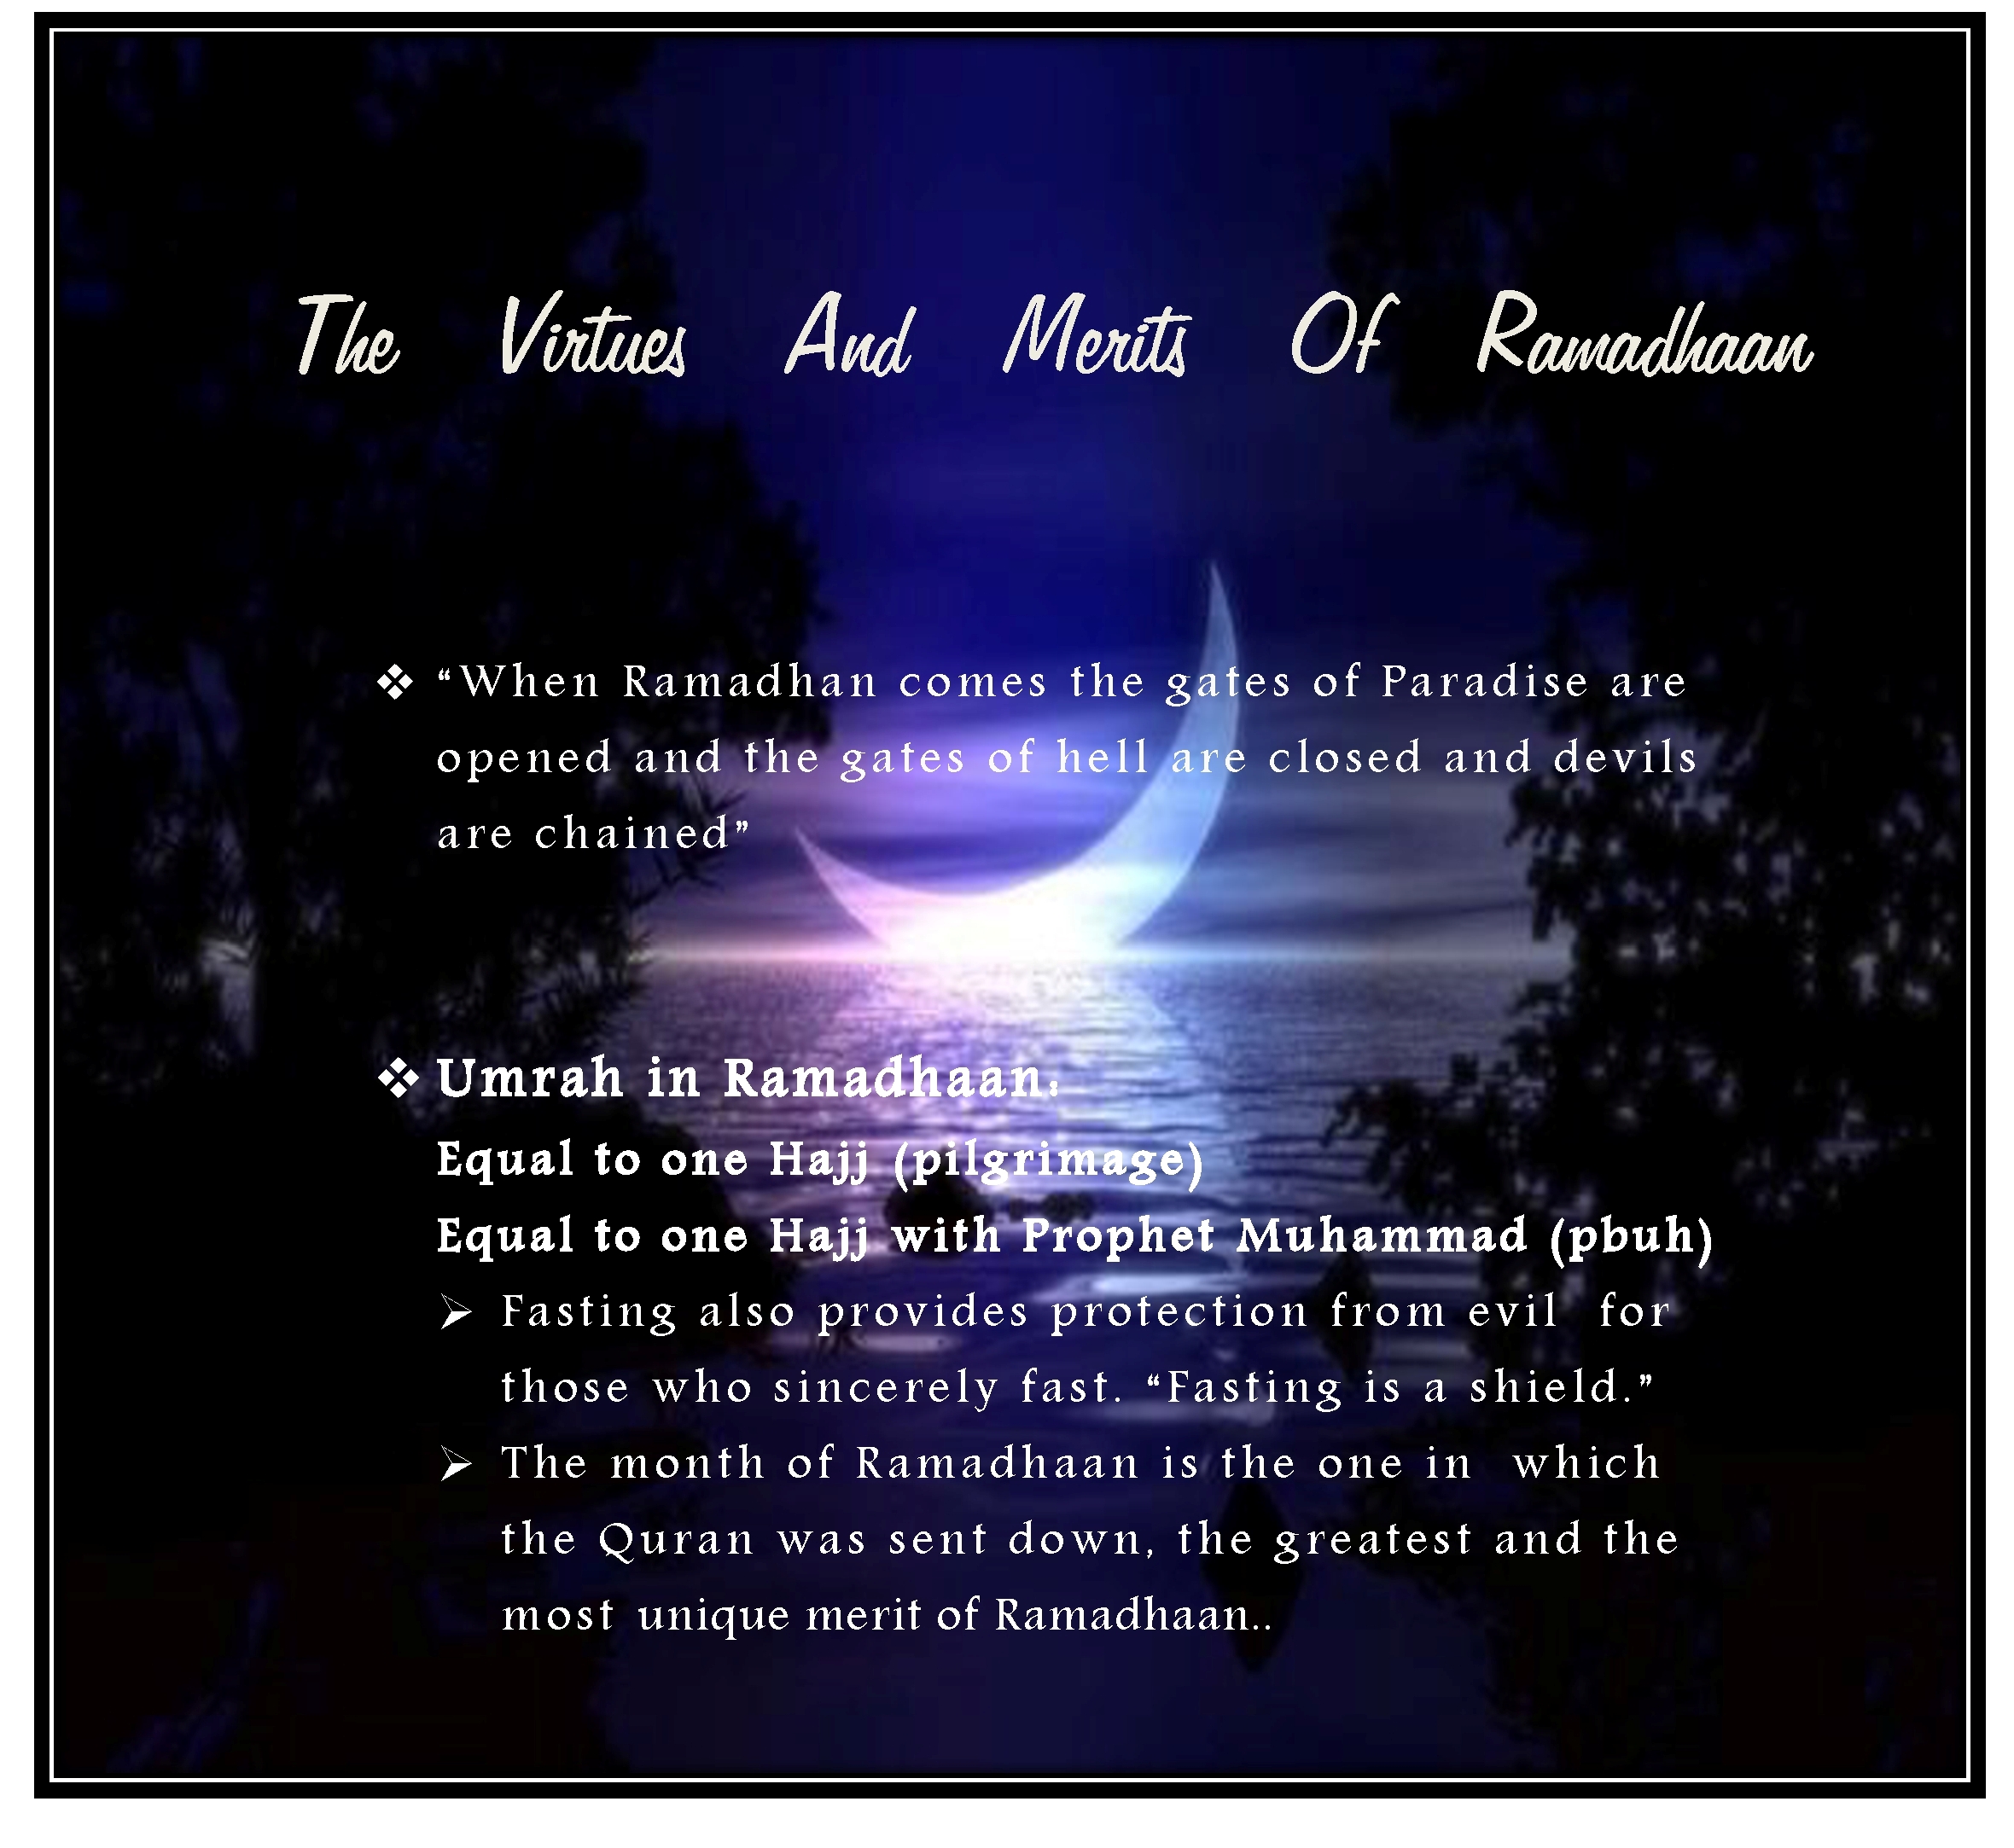 http://muhumin.files.wordpress.com/2013/08/virtues-and-merits-of-ramadhan1.jpg